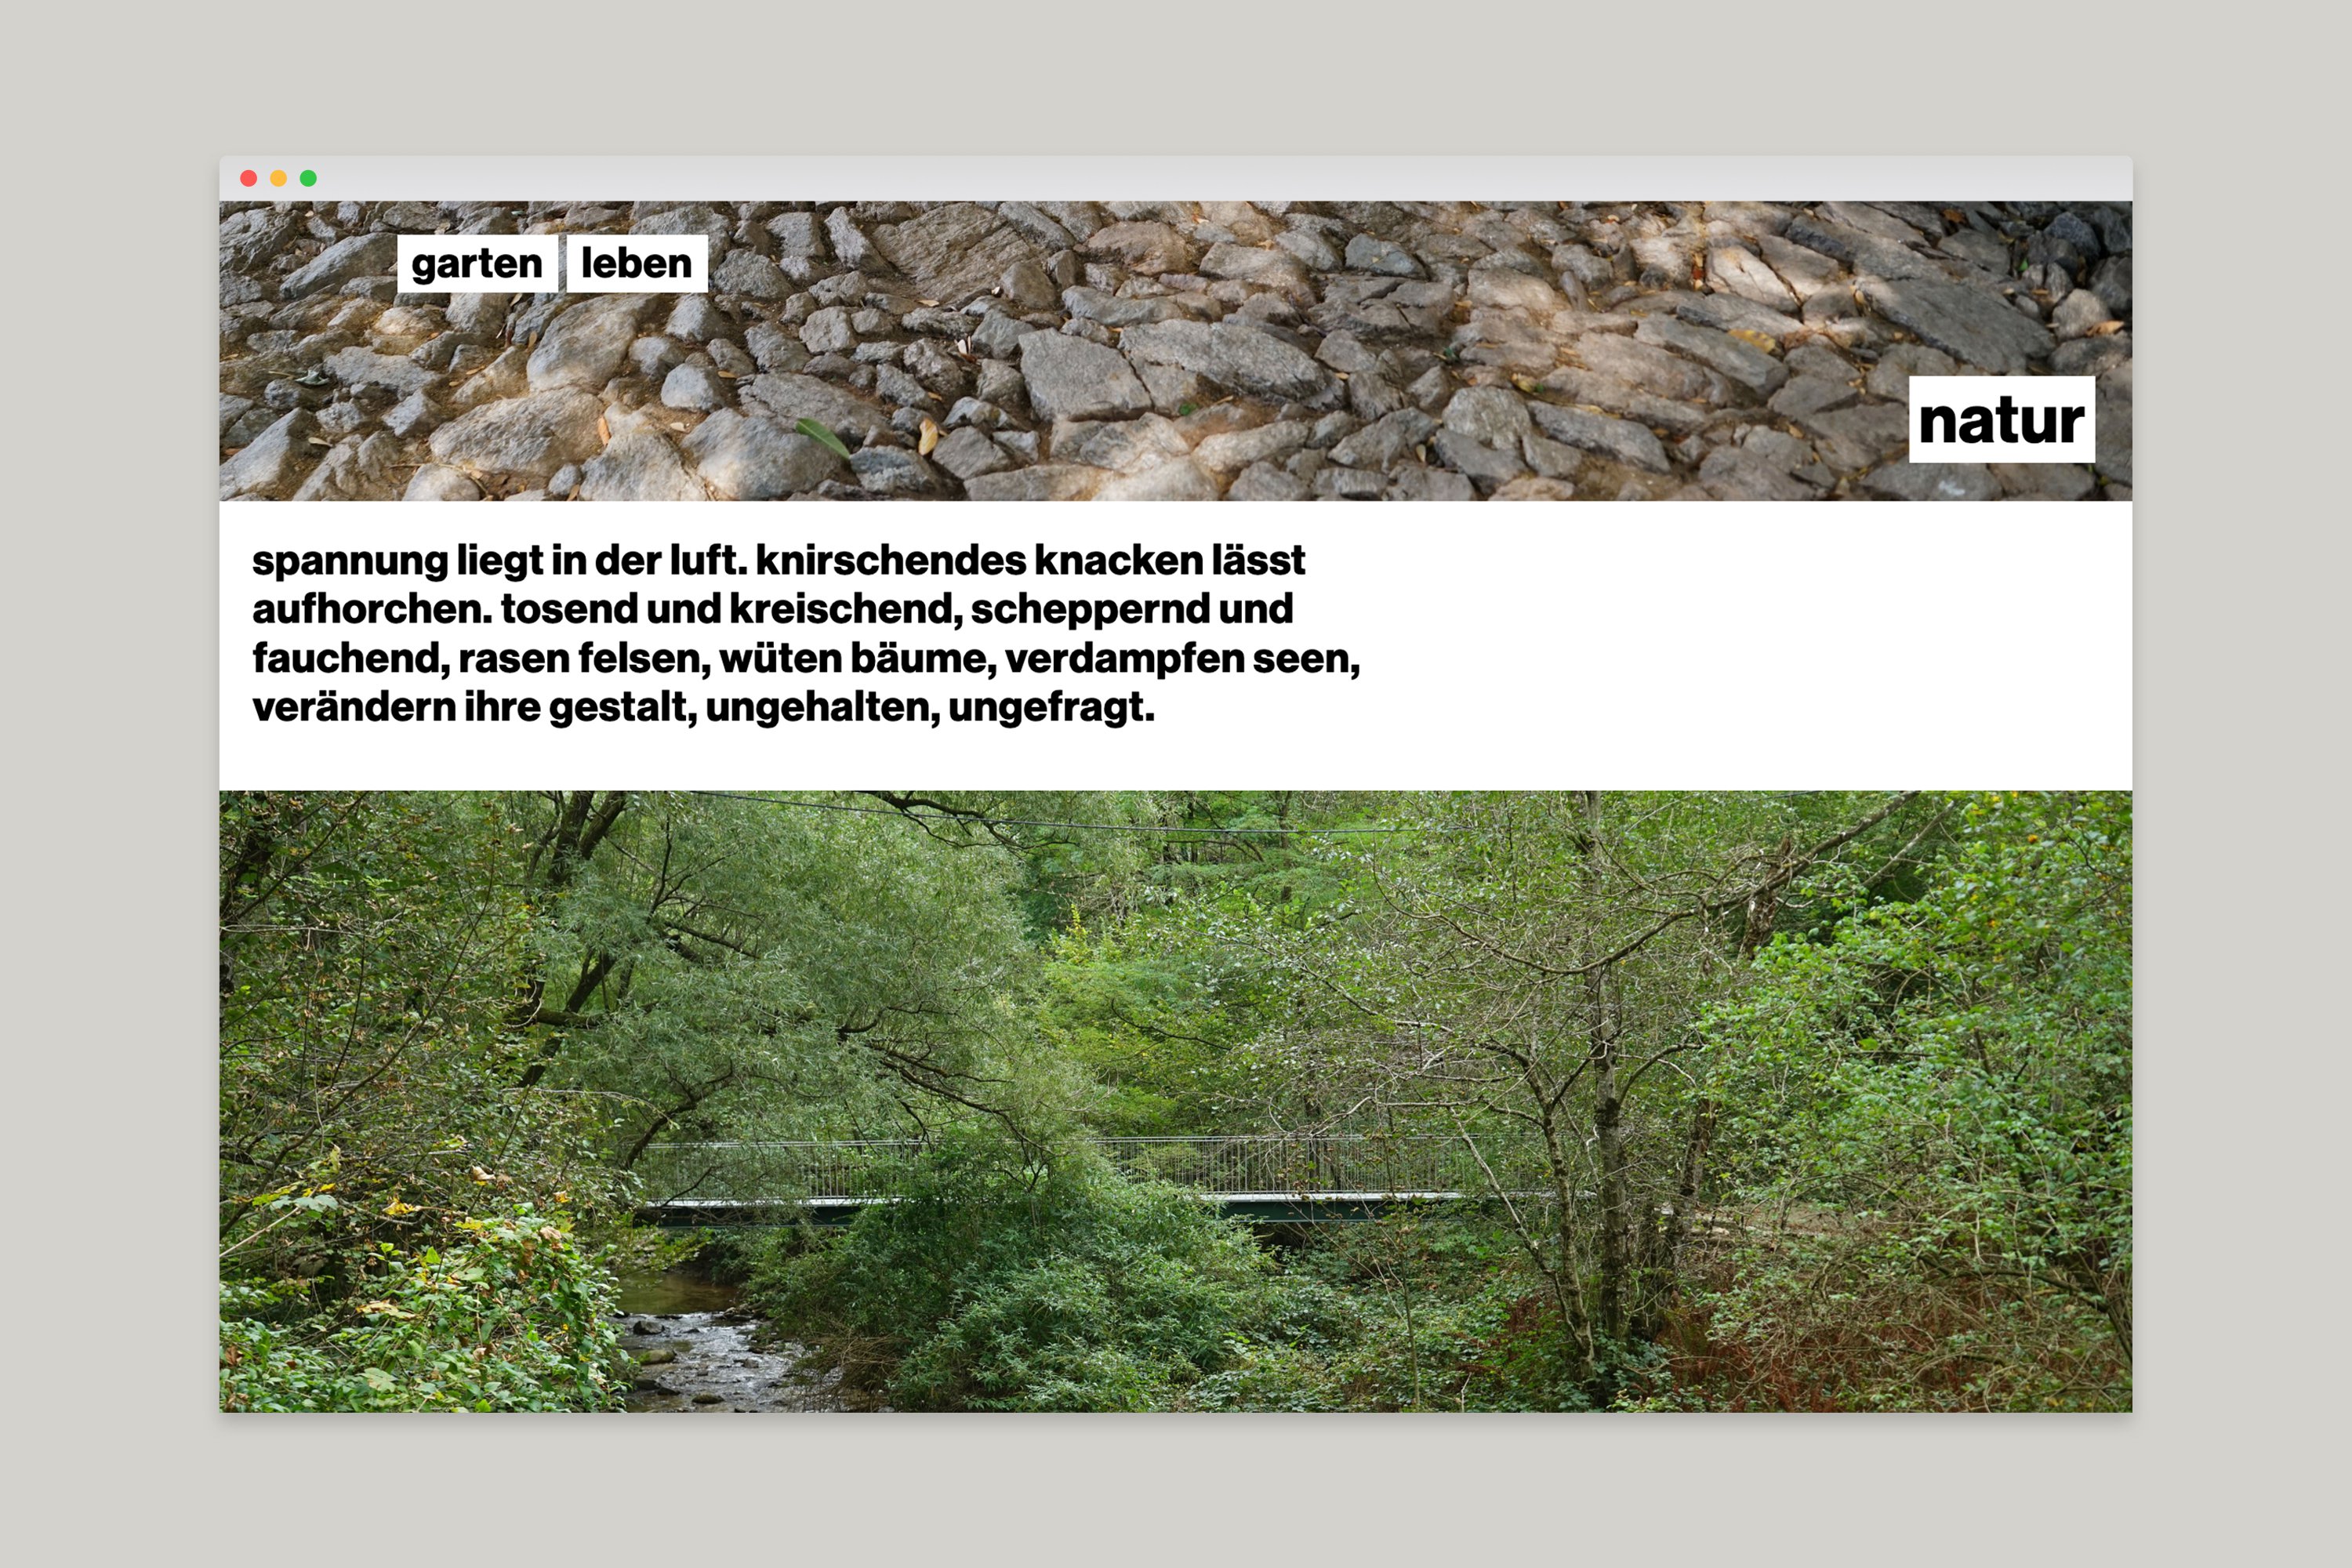 kong website naturgartenleben 2019